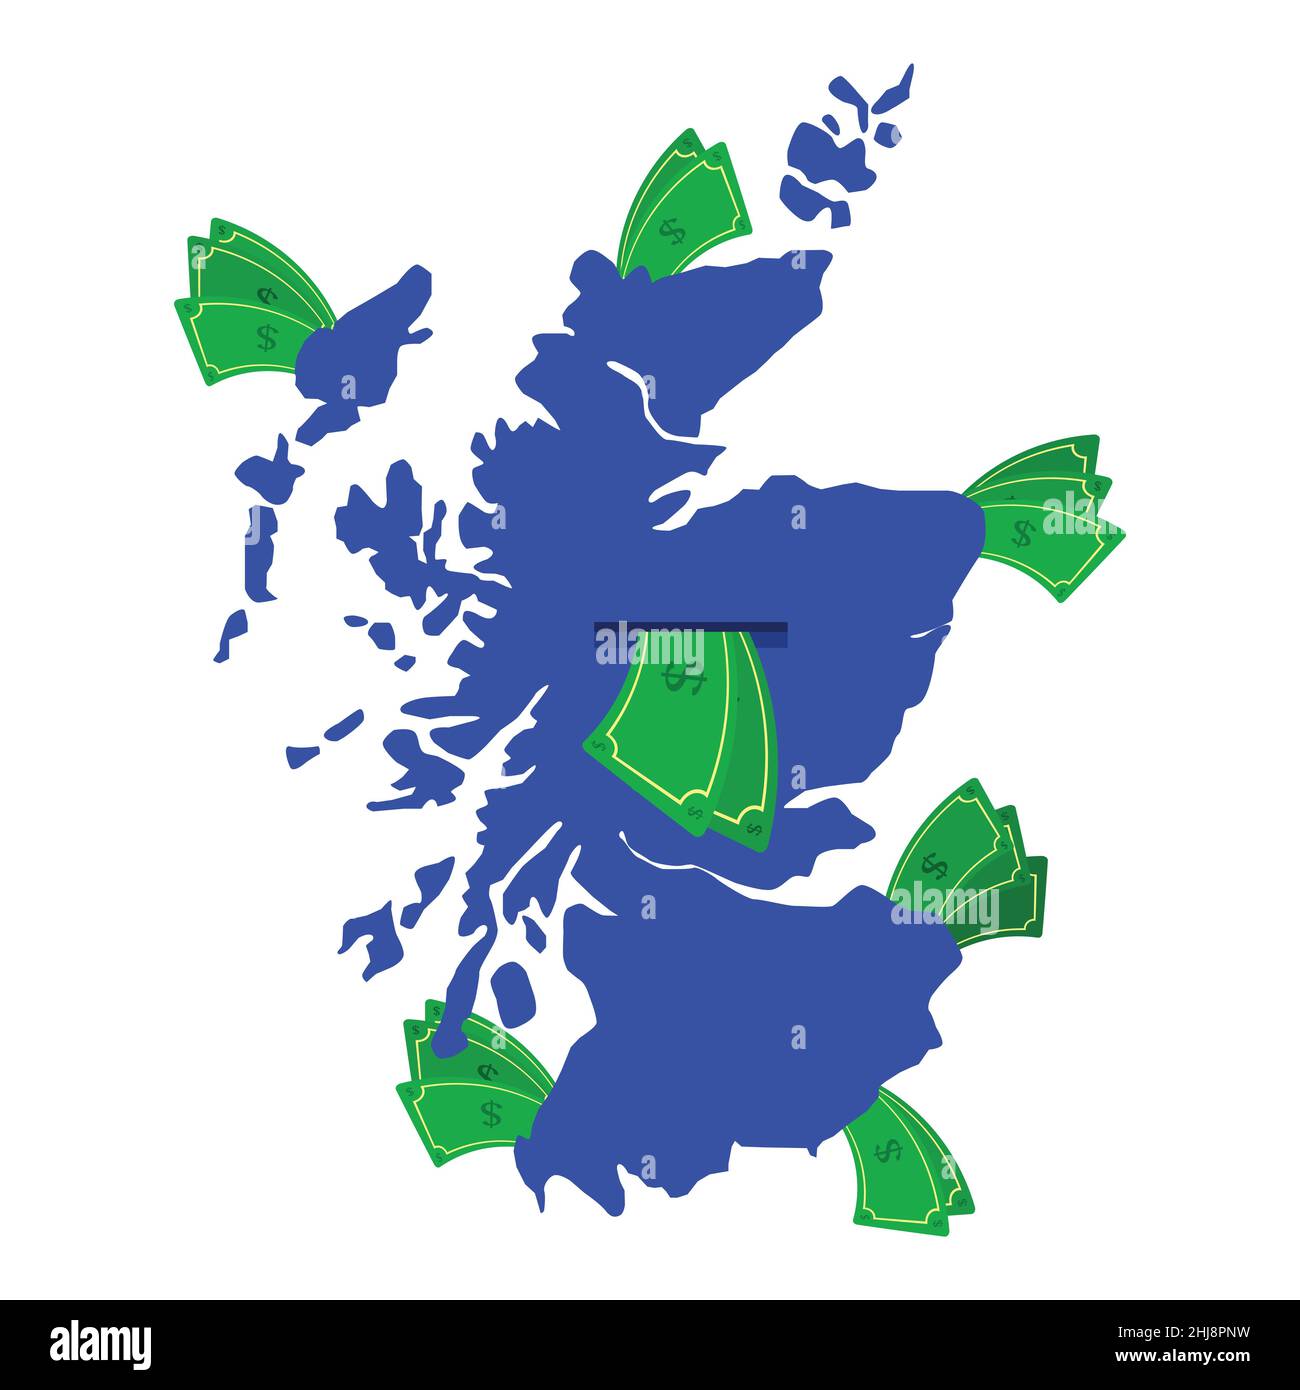 Schottland Karte in blau mit Geldscheinen um. Geld verlässt das Zentrum des Landes. Wirtschaft des schottischen Landes. Weißer Hintergrund. Isoliert. Stock Vektor